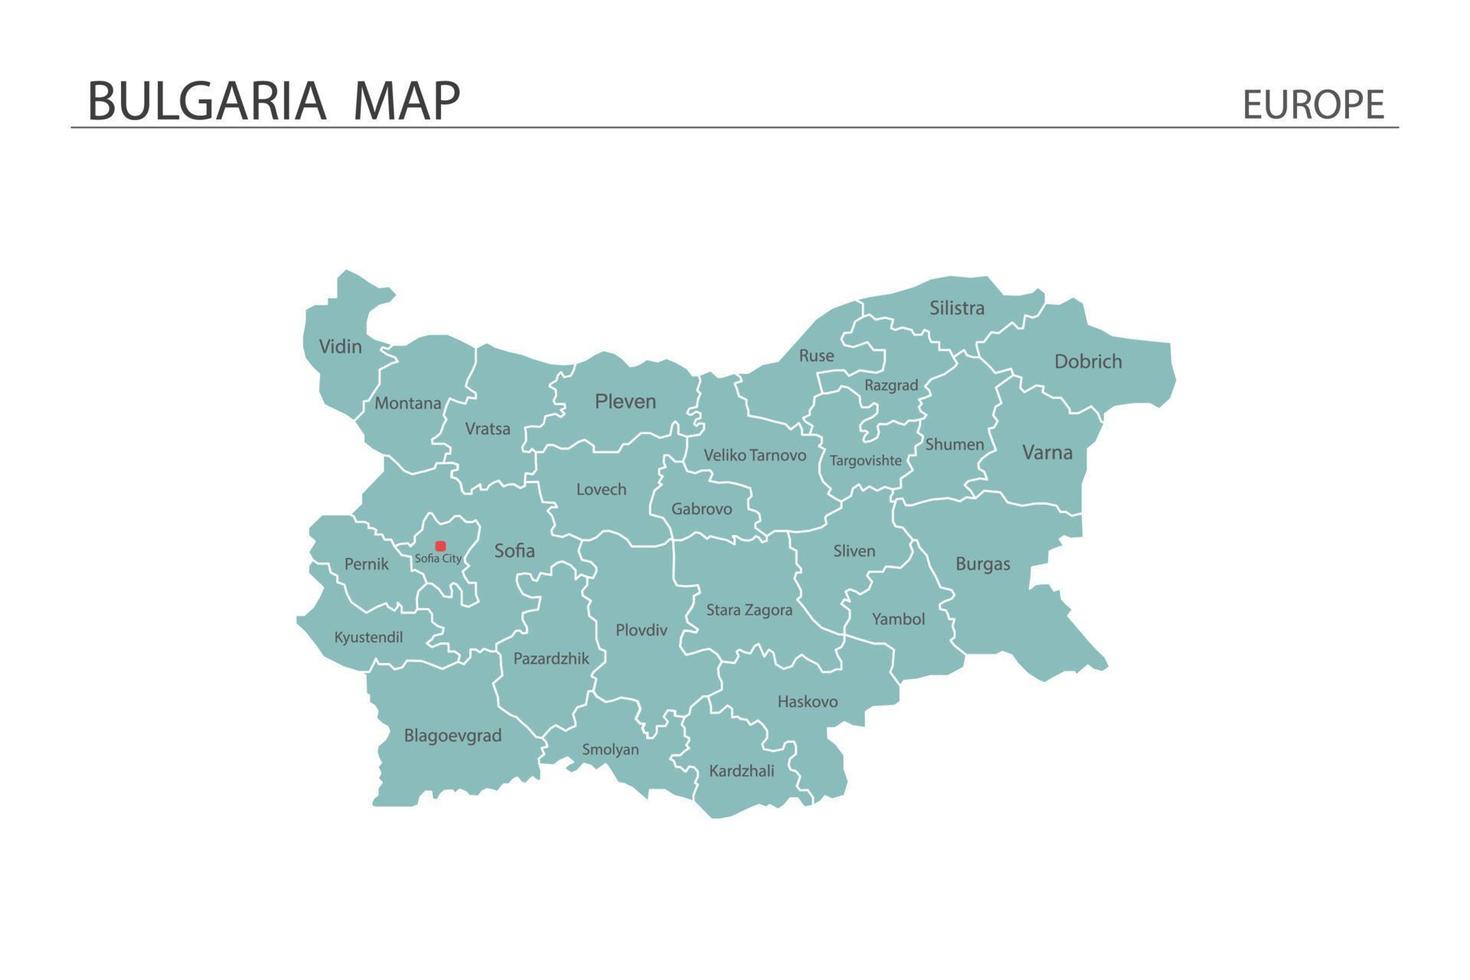 vector de mapa de bulgaria sobre fondo blanco. el mapa tiene toda la provincia y marca la ciudad capital de bulgaria.